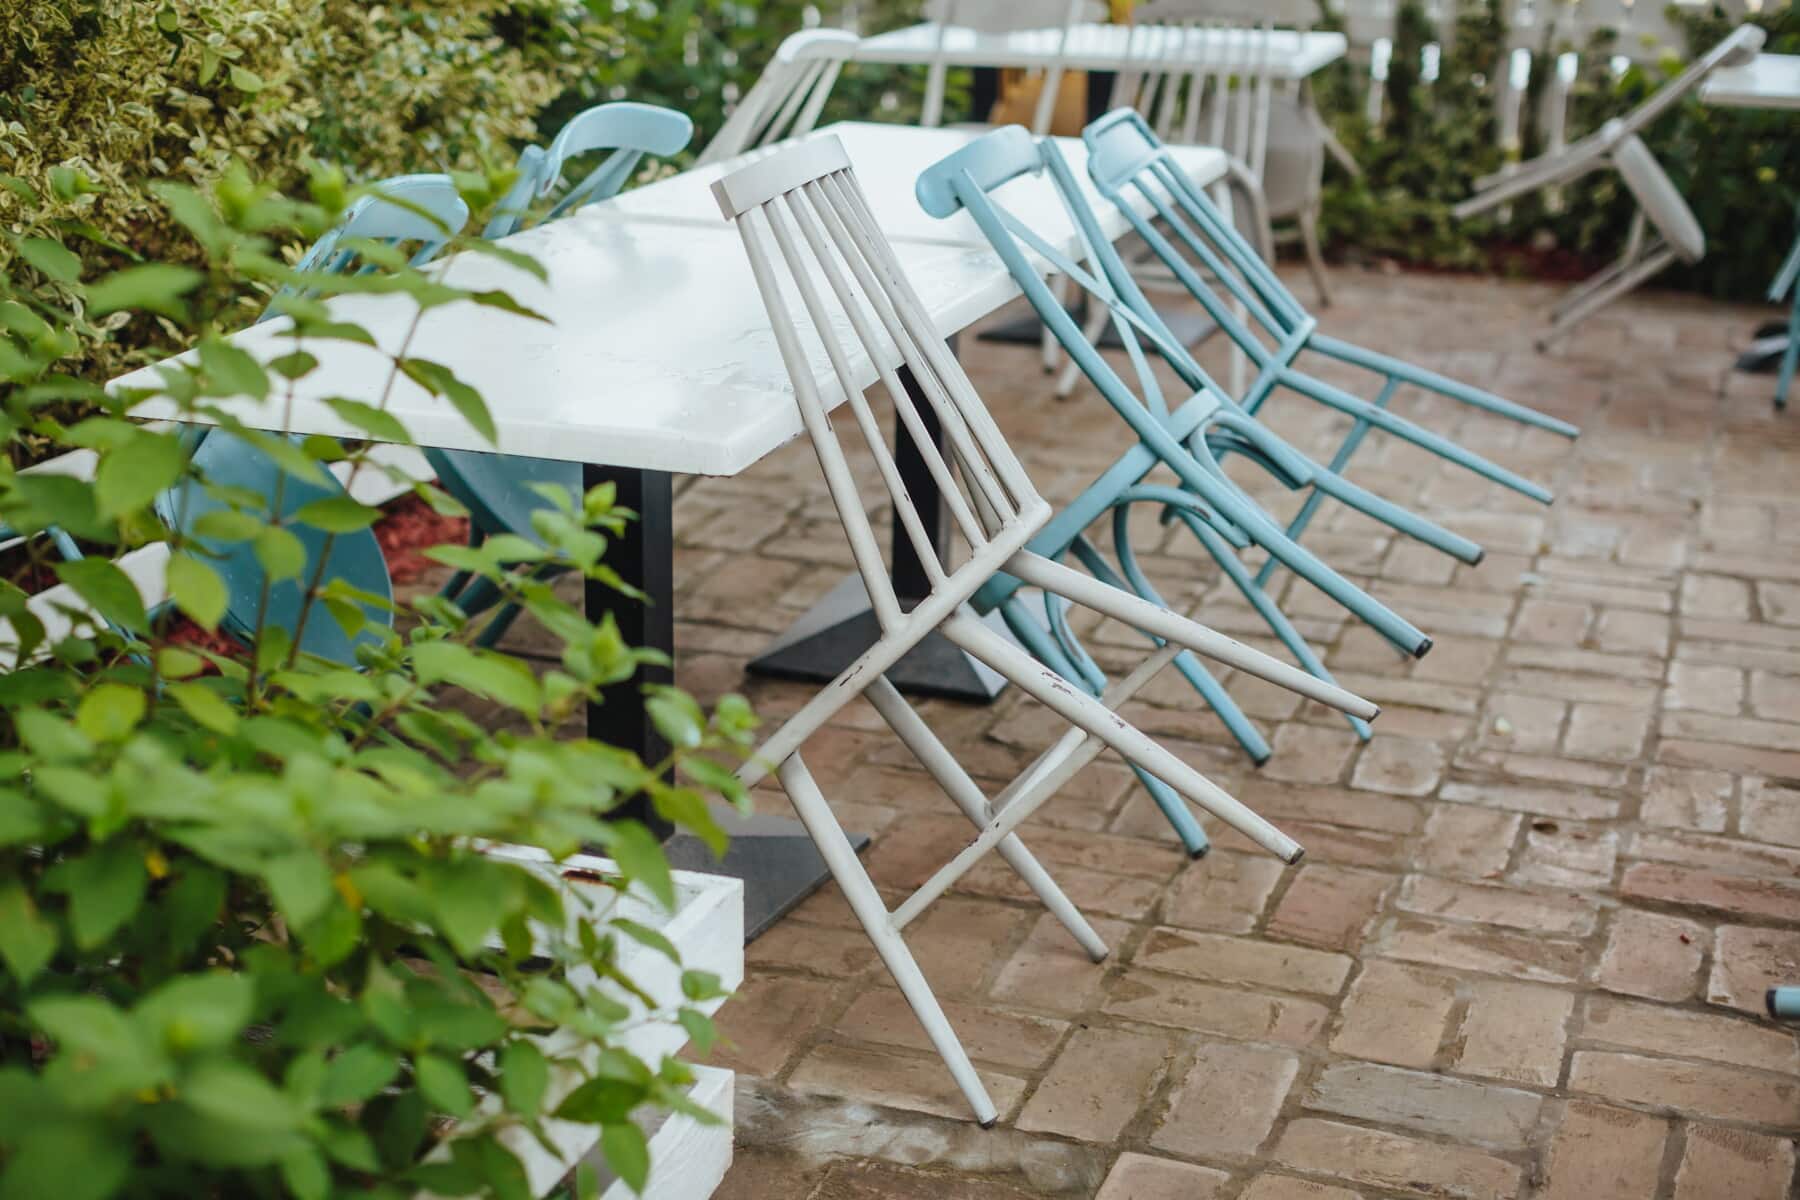 Klappstuhl oder Stapelstuhl: Die beste Wahl für platzsparende Sitzgelegenheiten für den Garten